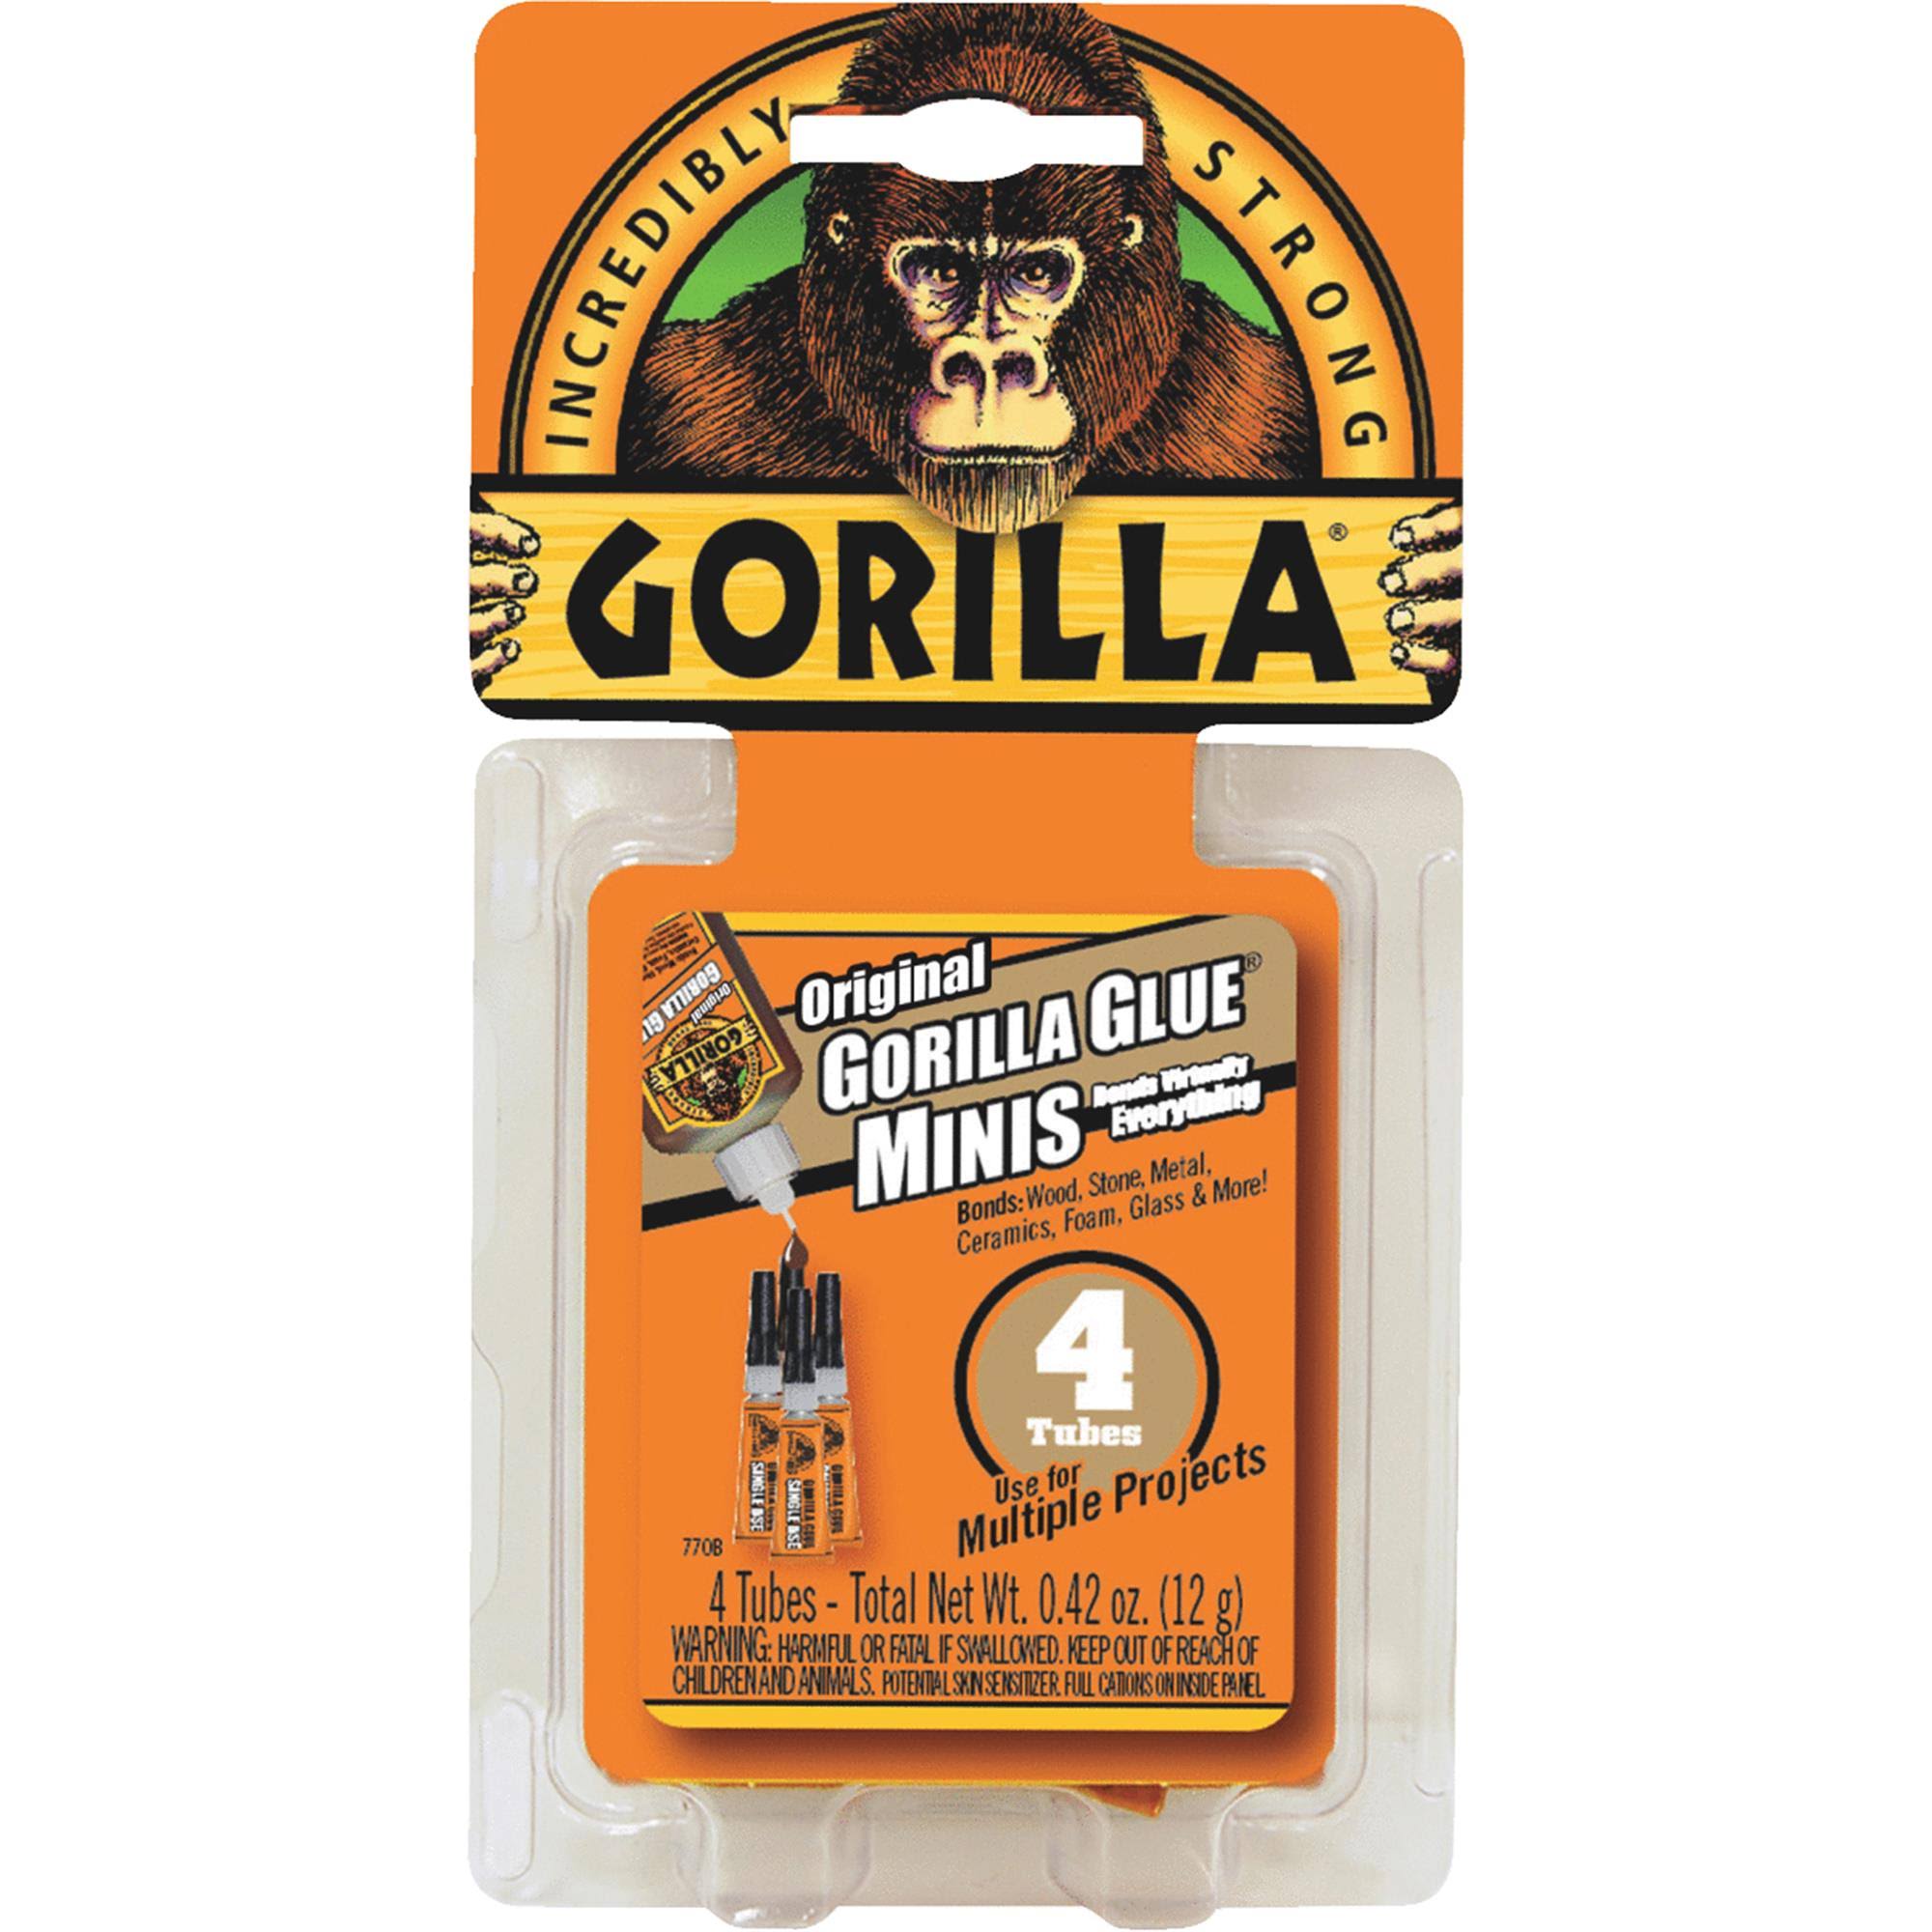 Gorilla Original Glue Minis